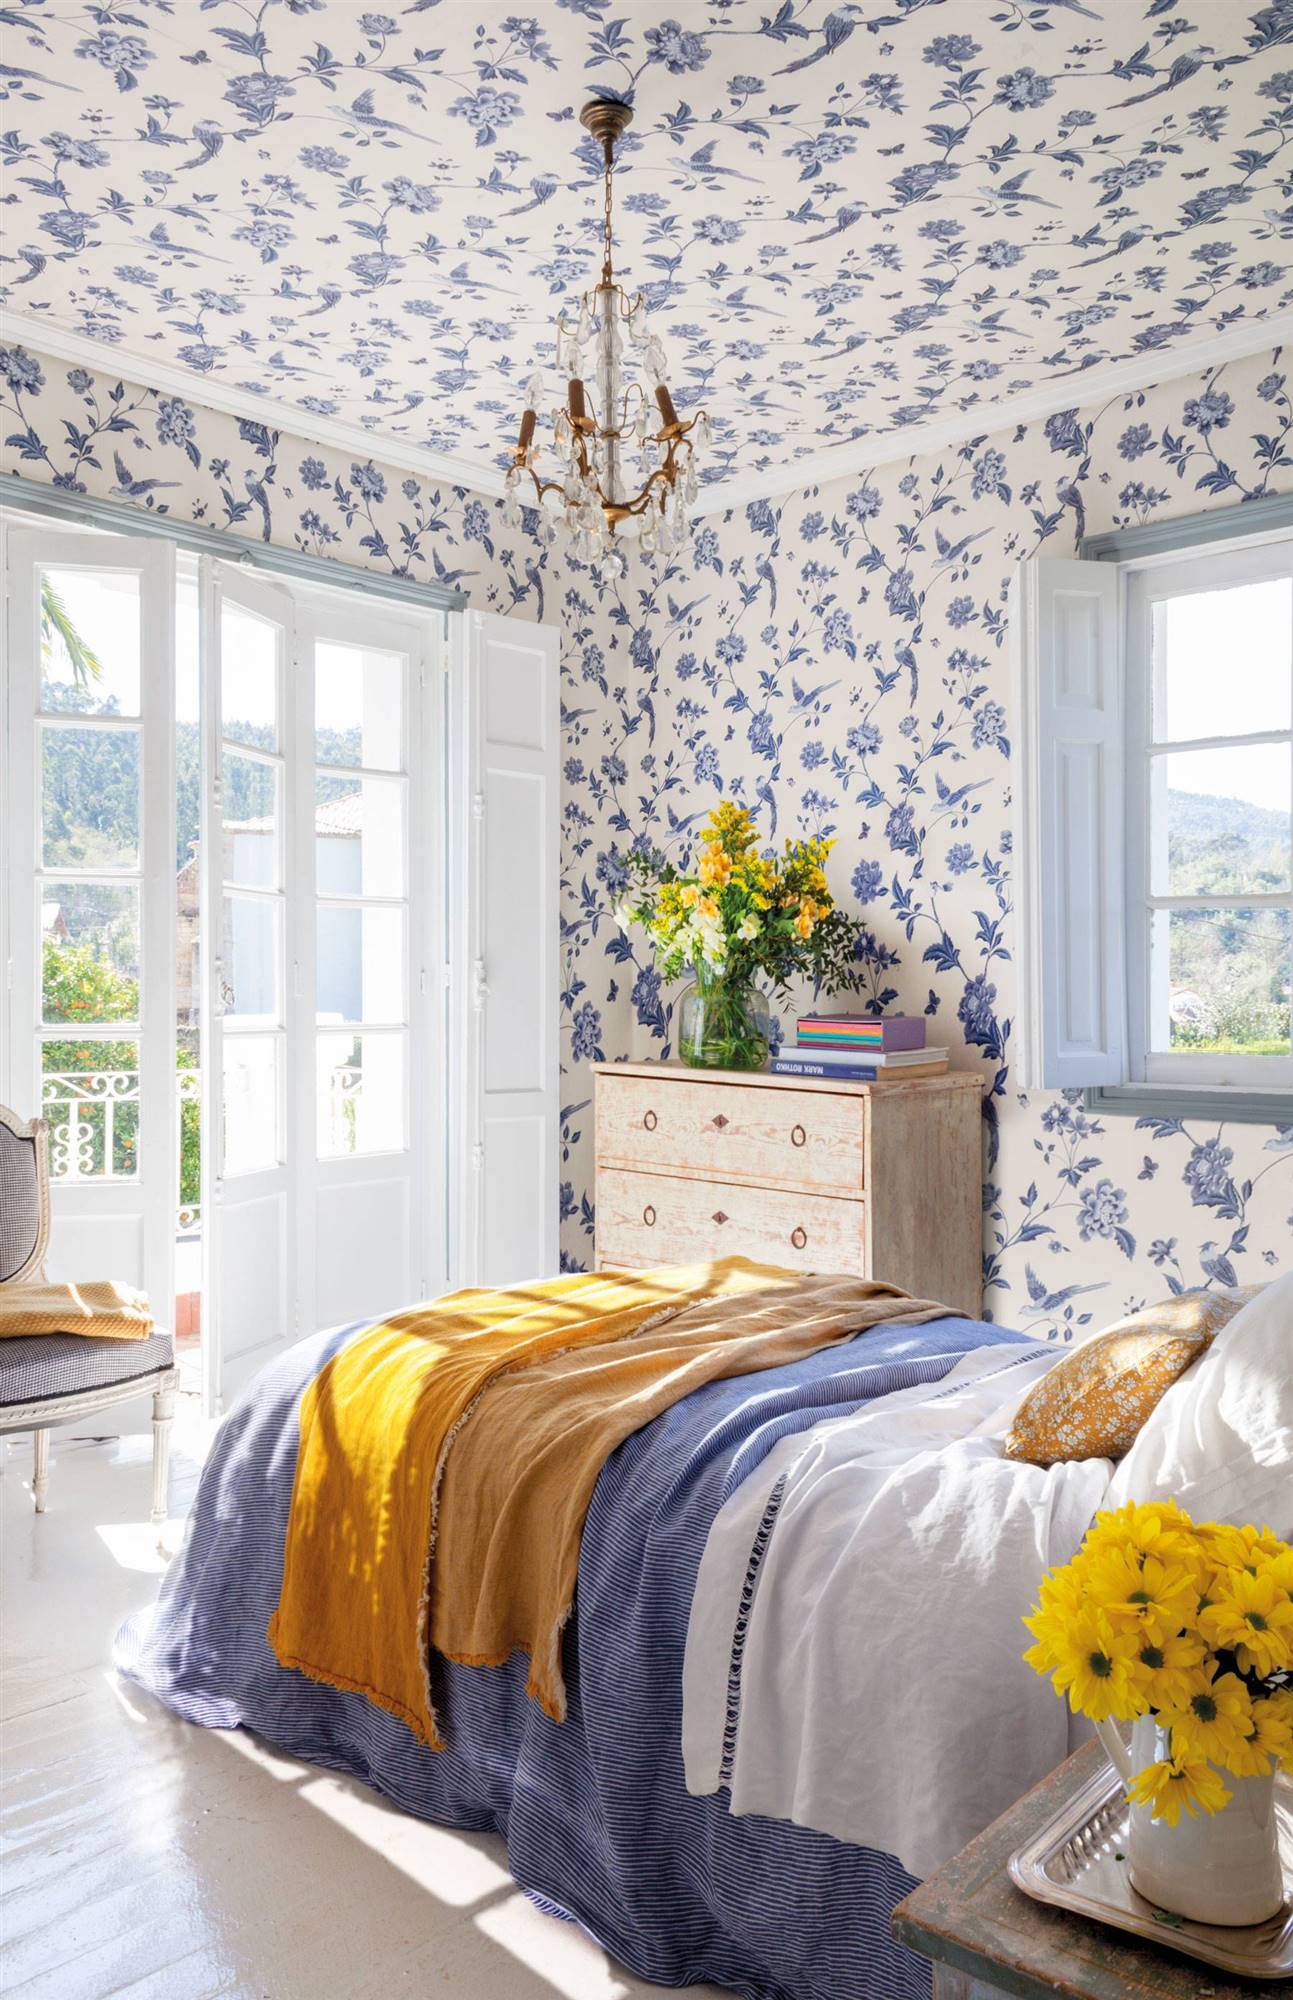 Dormitorio con papel pintado floral en paredes y techos. 